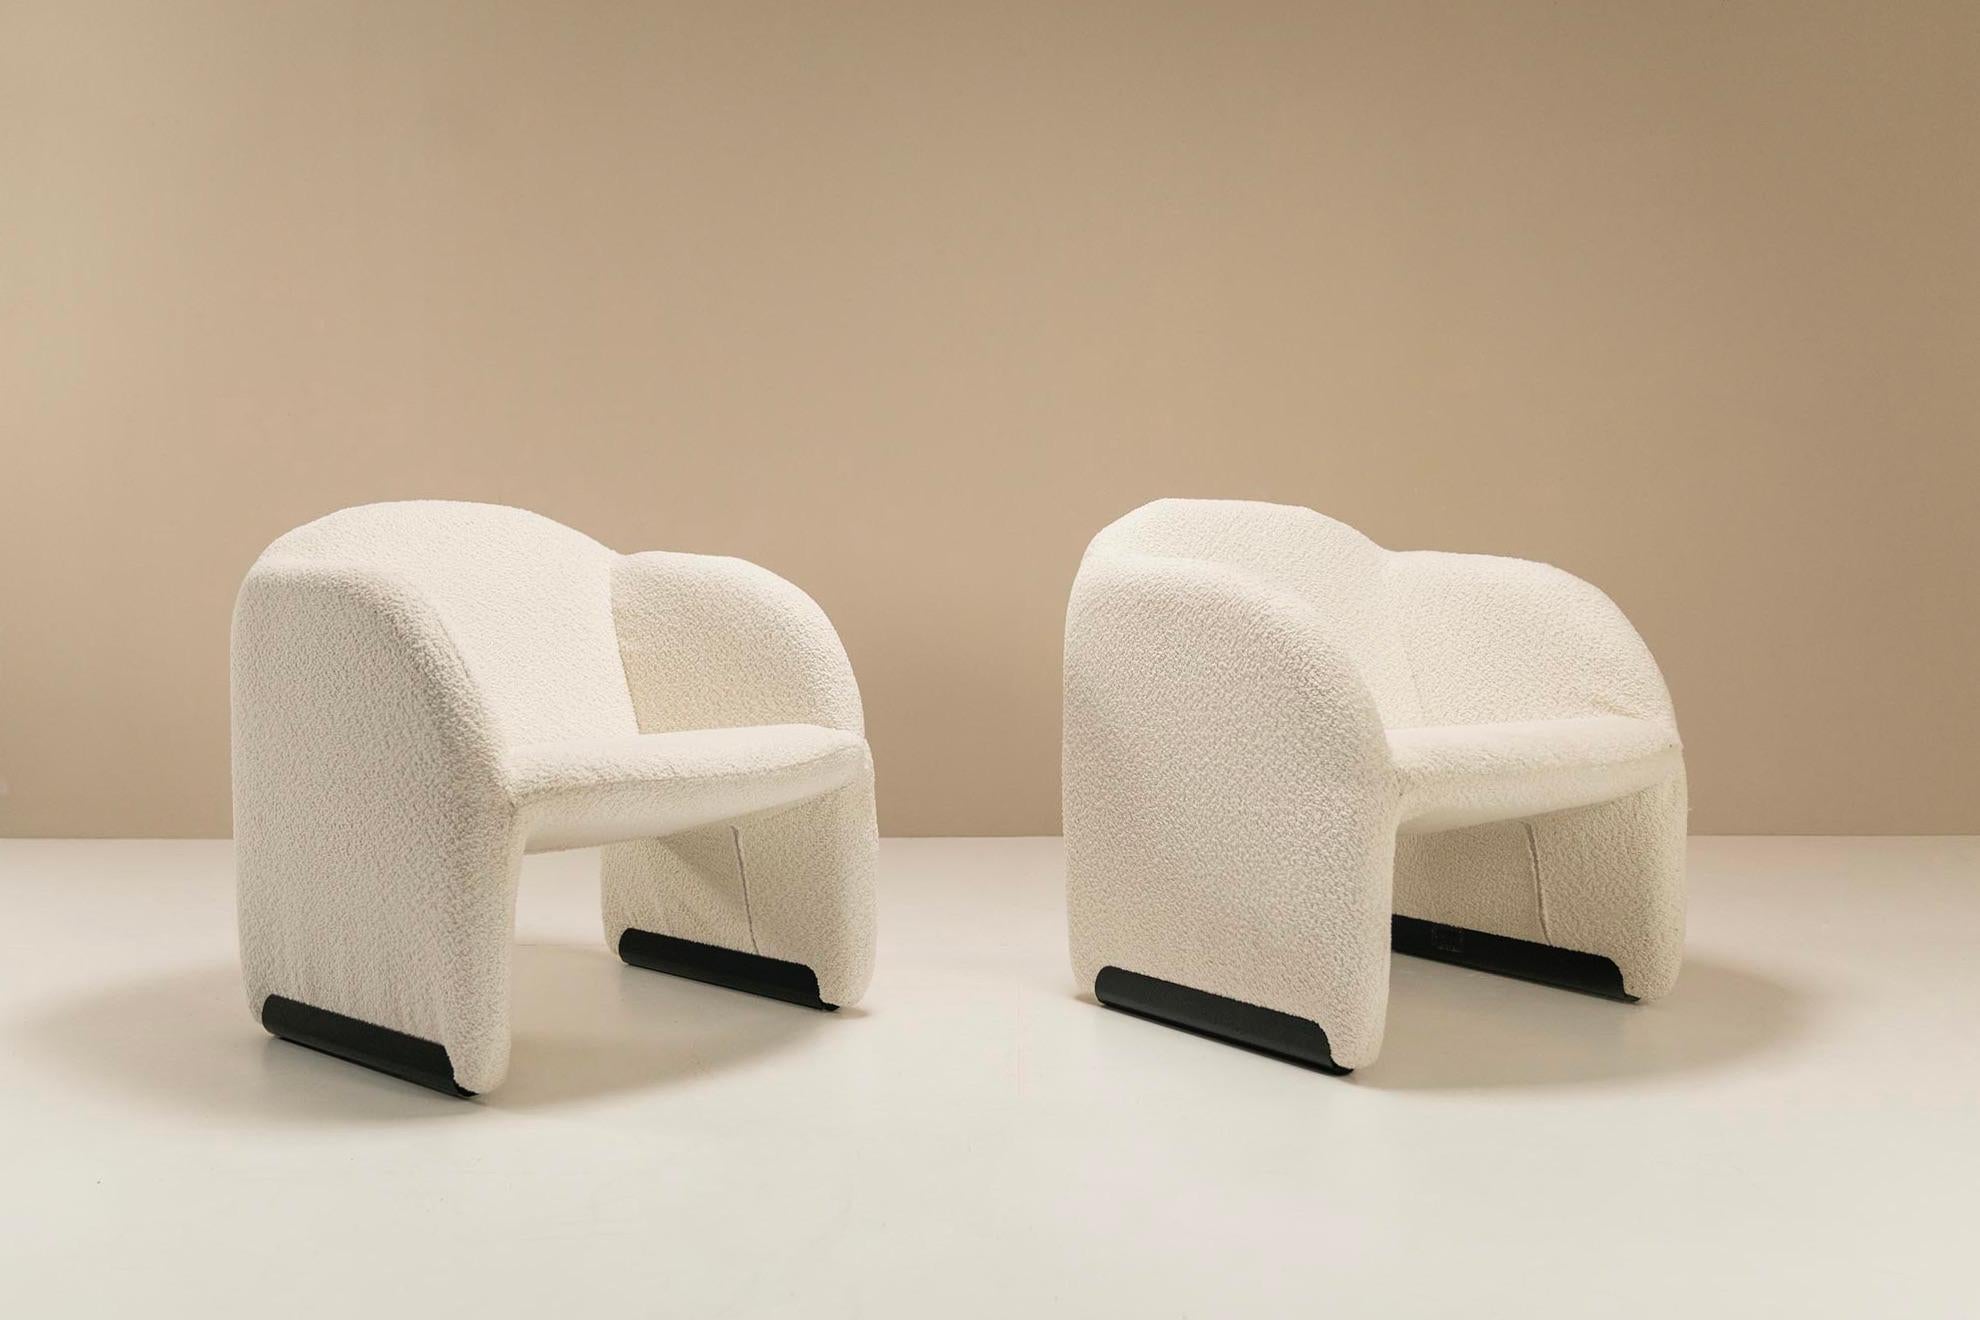 Il s'agit de deux chaises longues classiques Artifort conçues par le designer français Pierre Paulin. Ce modèle, baptisé 